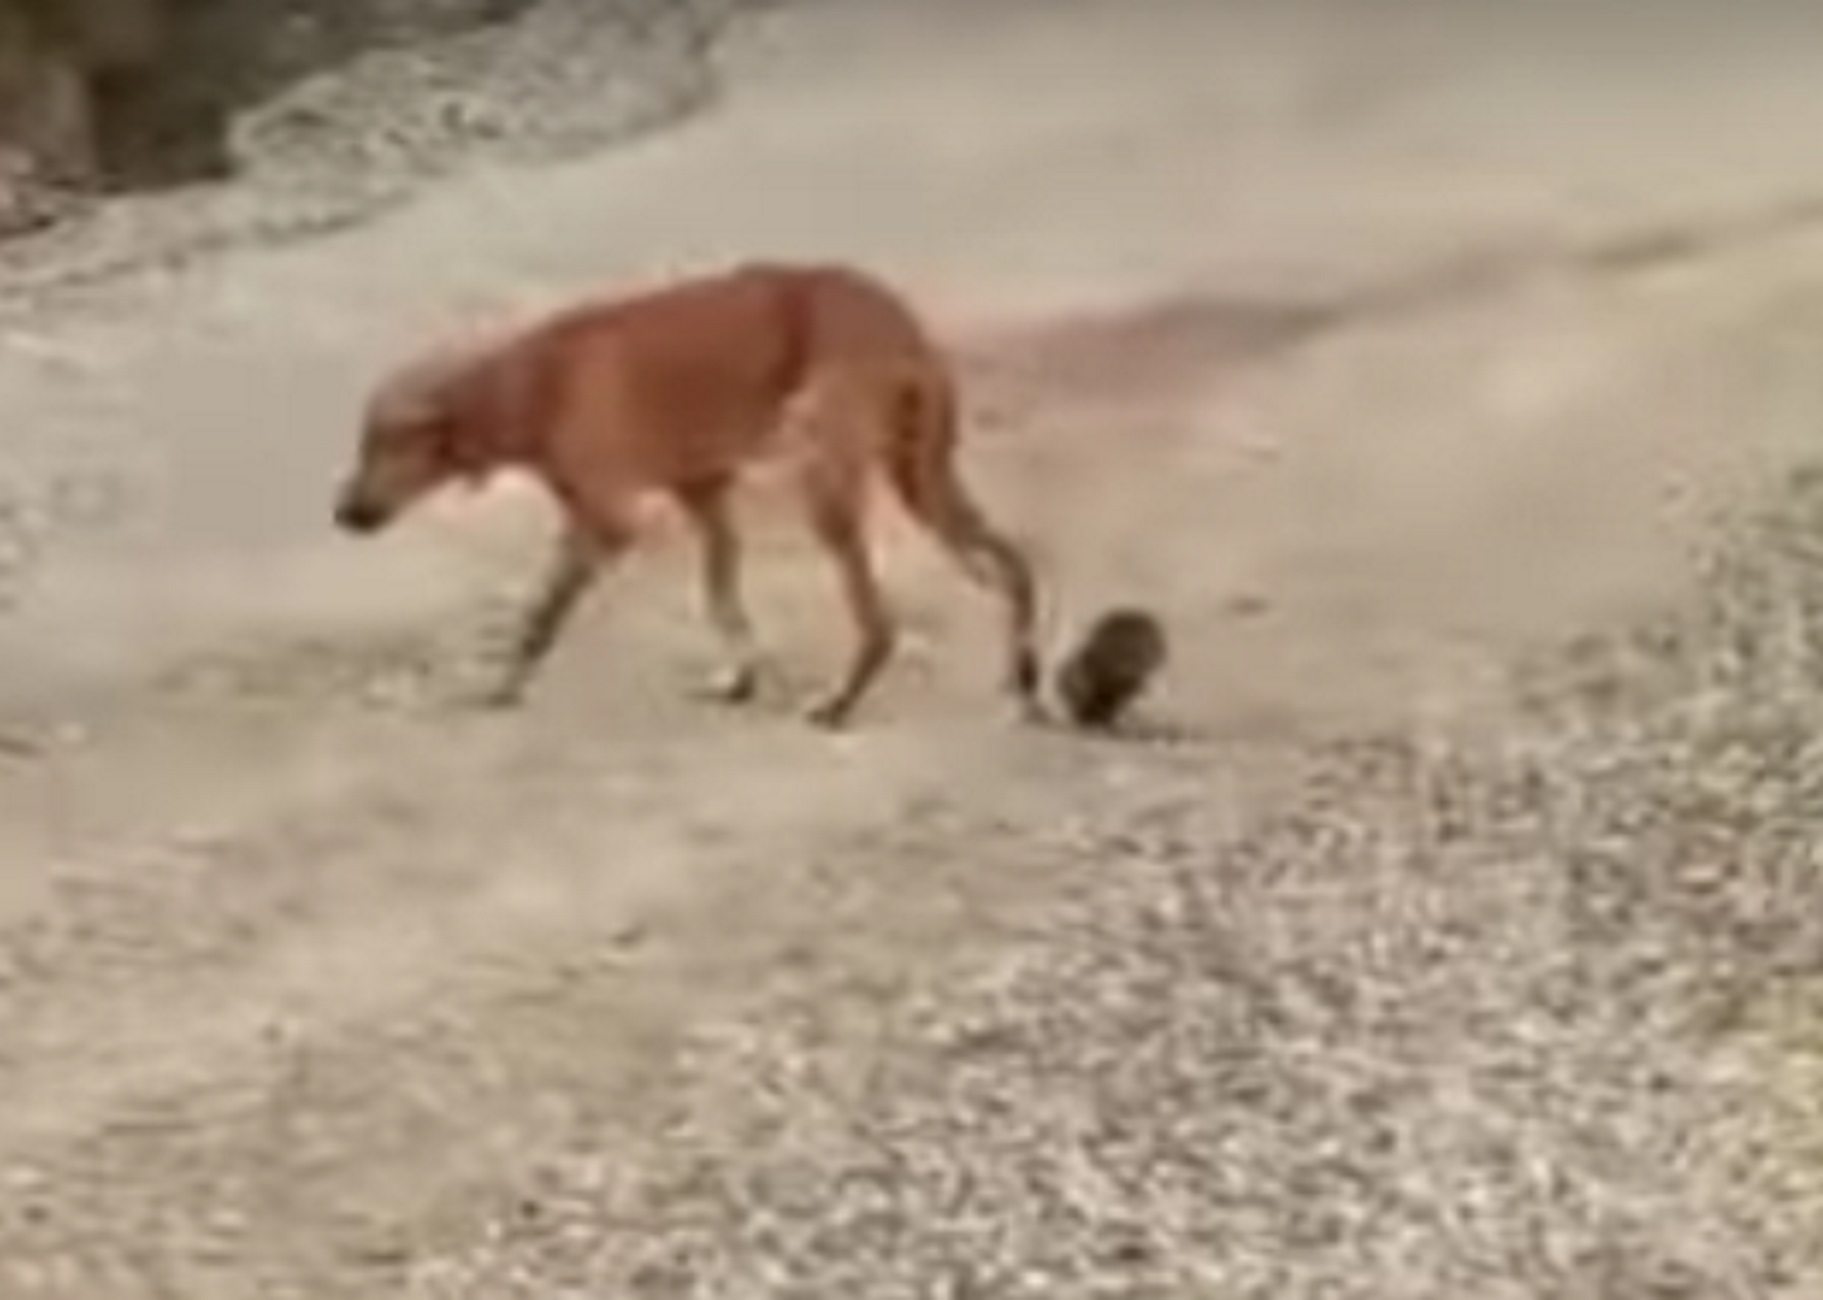 Χαλκιδική: Πώς είναι σήμερα η σκυλίτσα μετά την αδιανόητη κτηνωδία με σύρμα και τενεκεδάκι